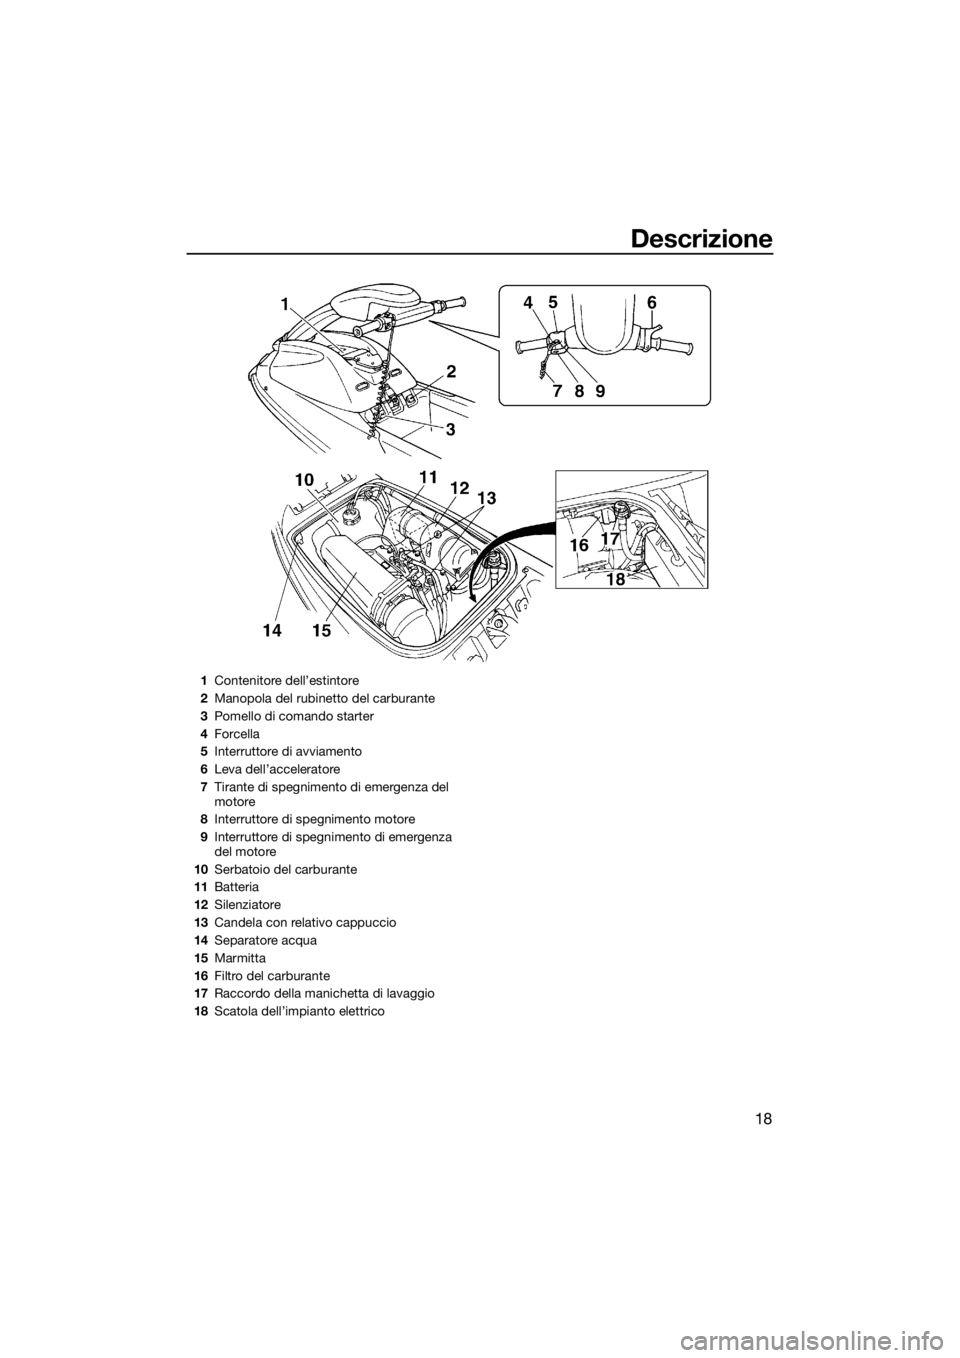 YAMAHA SUPERJET 2016  Manuale duso (in Italian) Descrizione
18
1Contenitore dell’estintore
2Manopola del rubinetto del carburante
3Pomello di comando starter
4Forcella
5Interruttore di avviamento
6Leva dell’acceleratore
7Tirante di spegnimento 